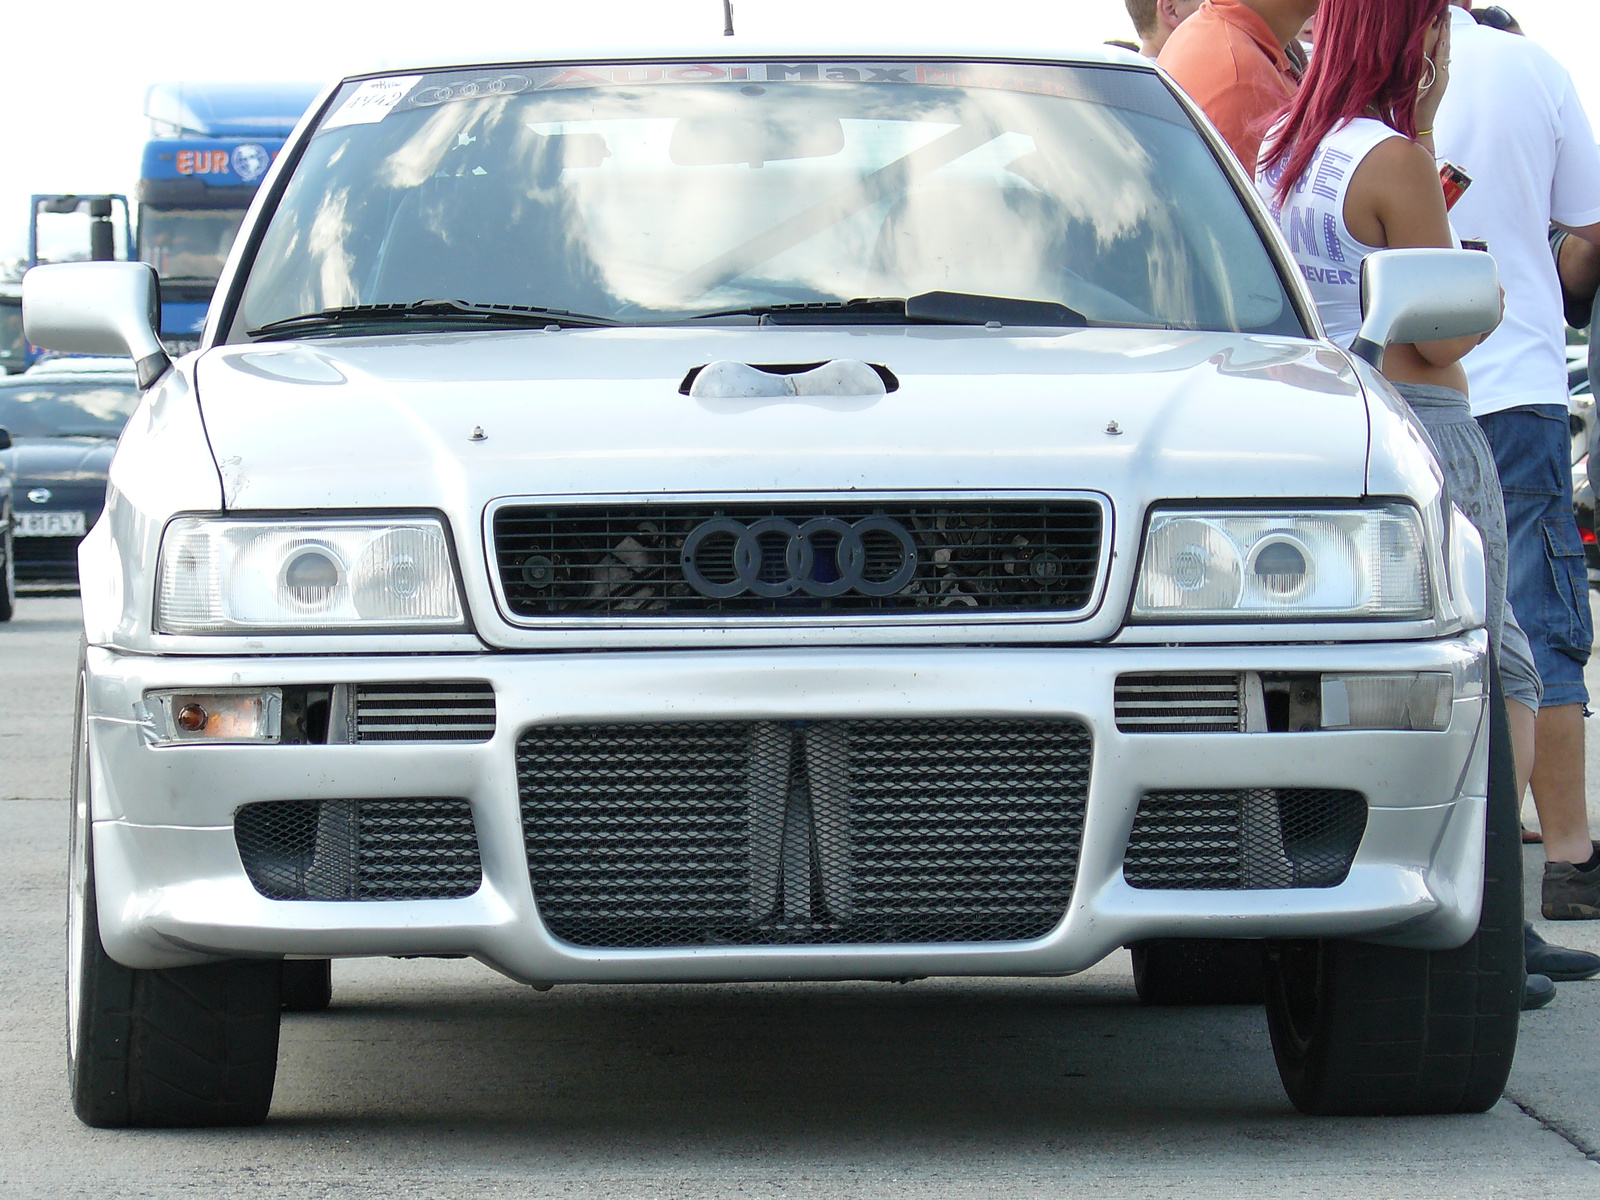 Isti Audi S2 V8 Biturbo (Nem saját kép)